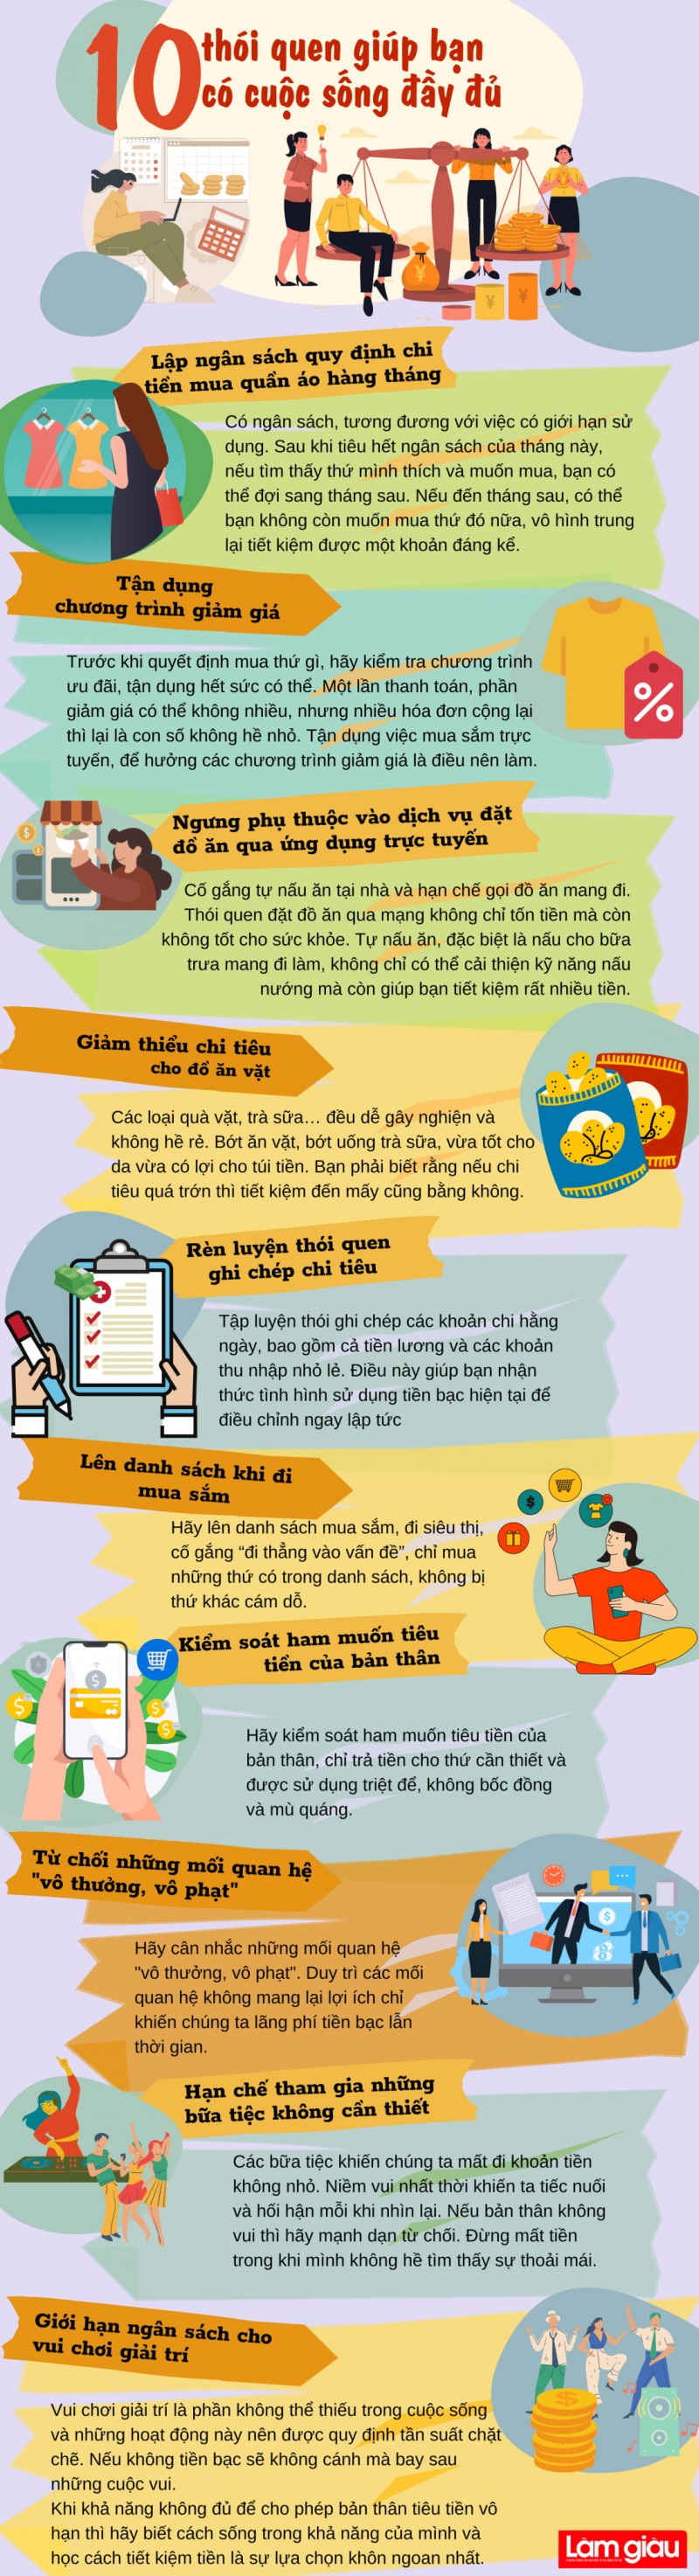 [Infographic]: 10 thói quen giúp bạn có cuộc sống đủ đầy